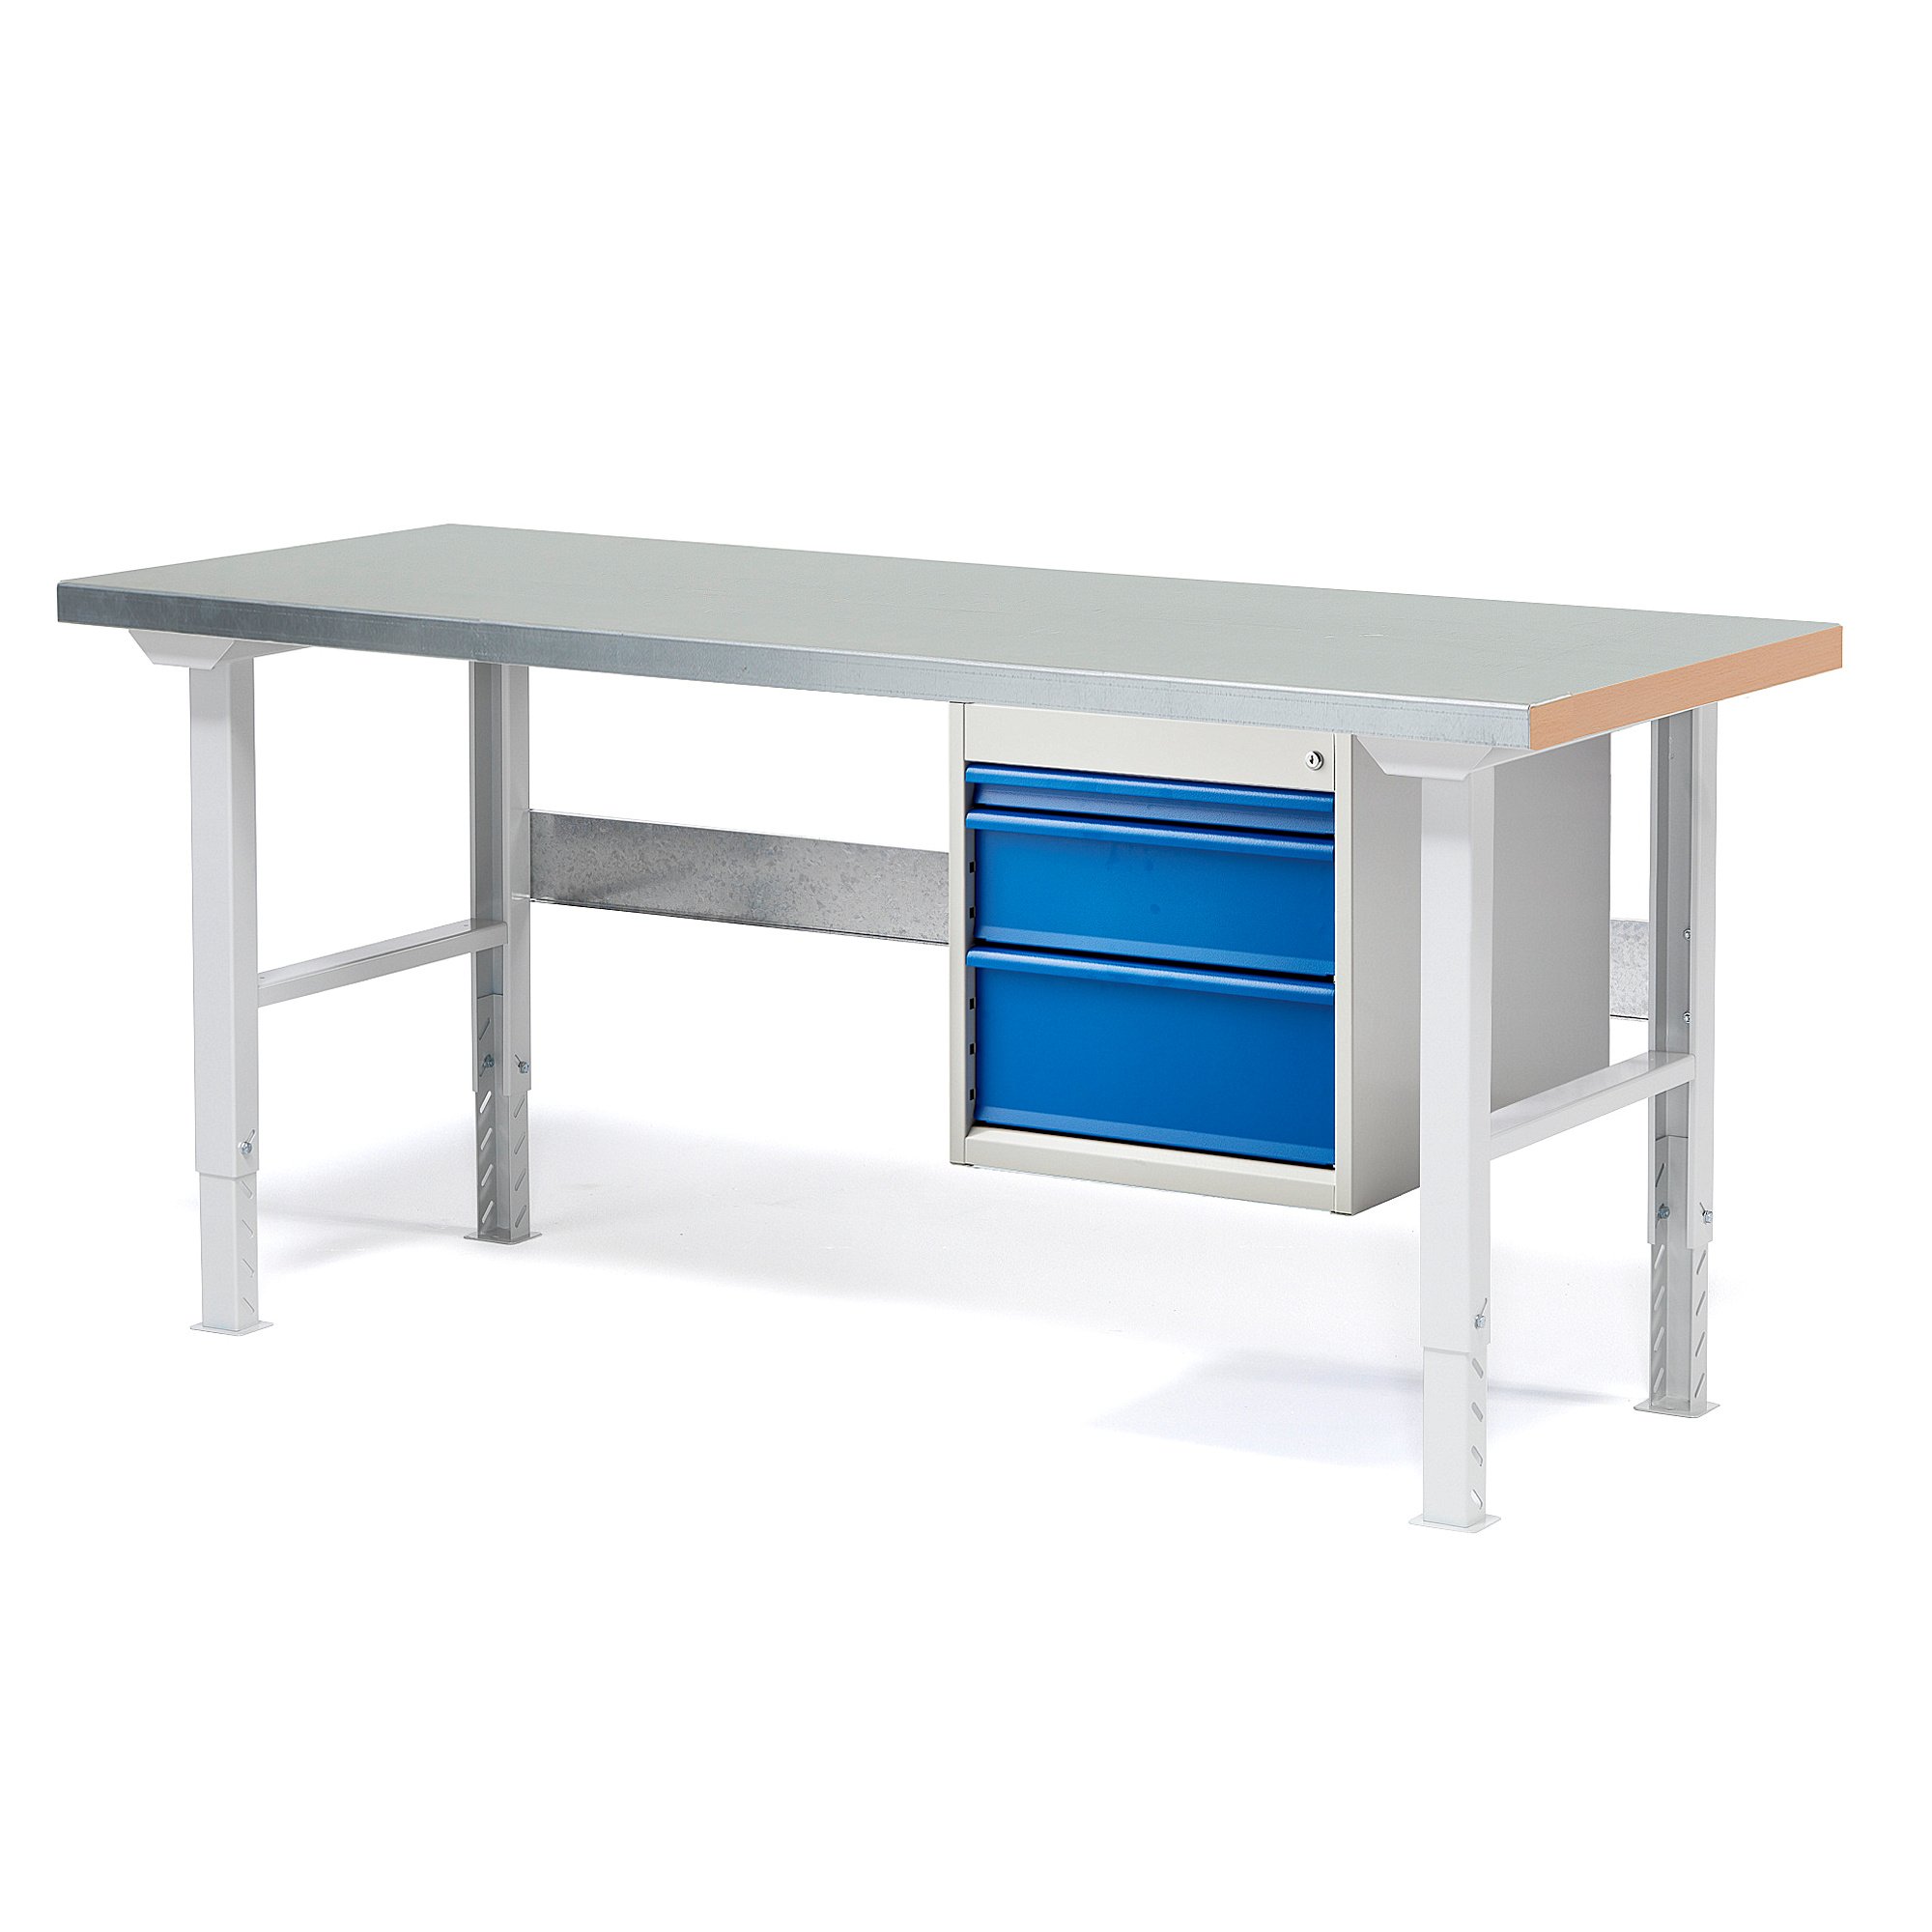 Dílenský stůl SOLID, 1500x800 mm, nosnost 750 kg, 3 zásuvky, ocelový povrch